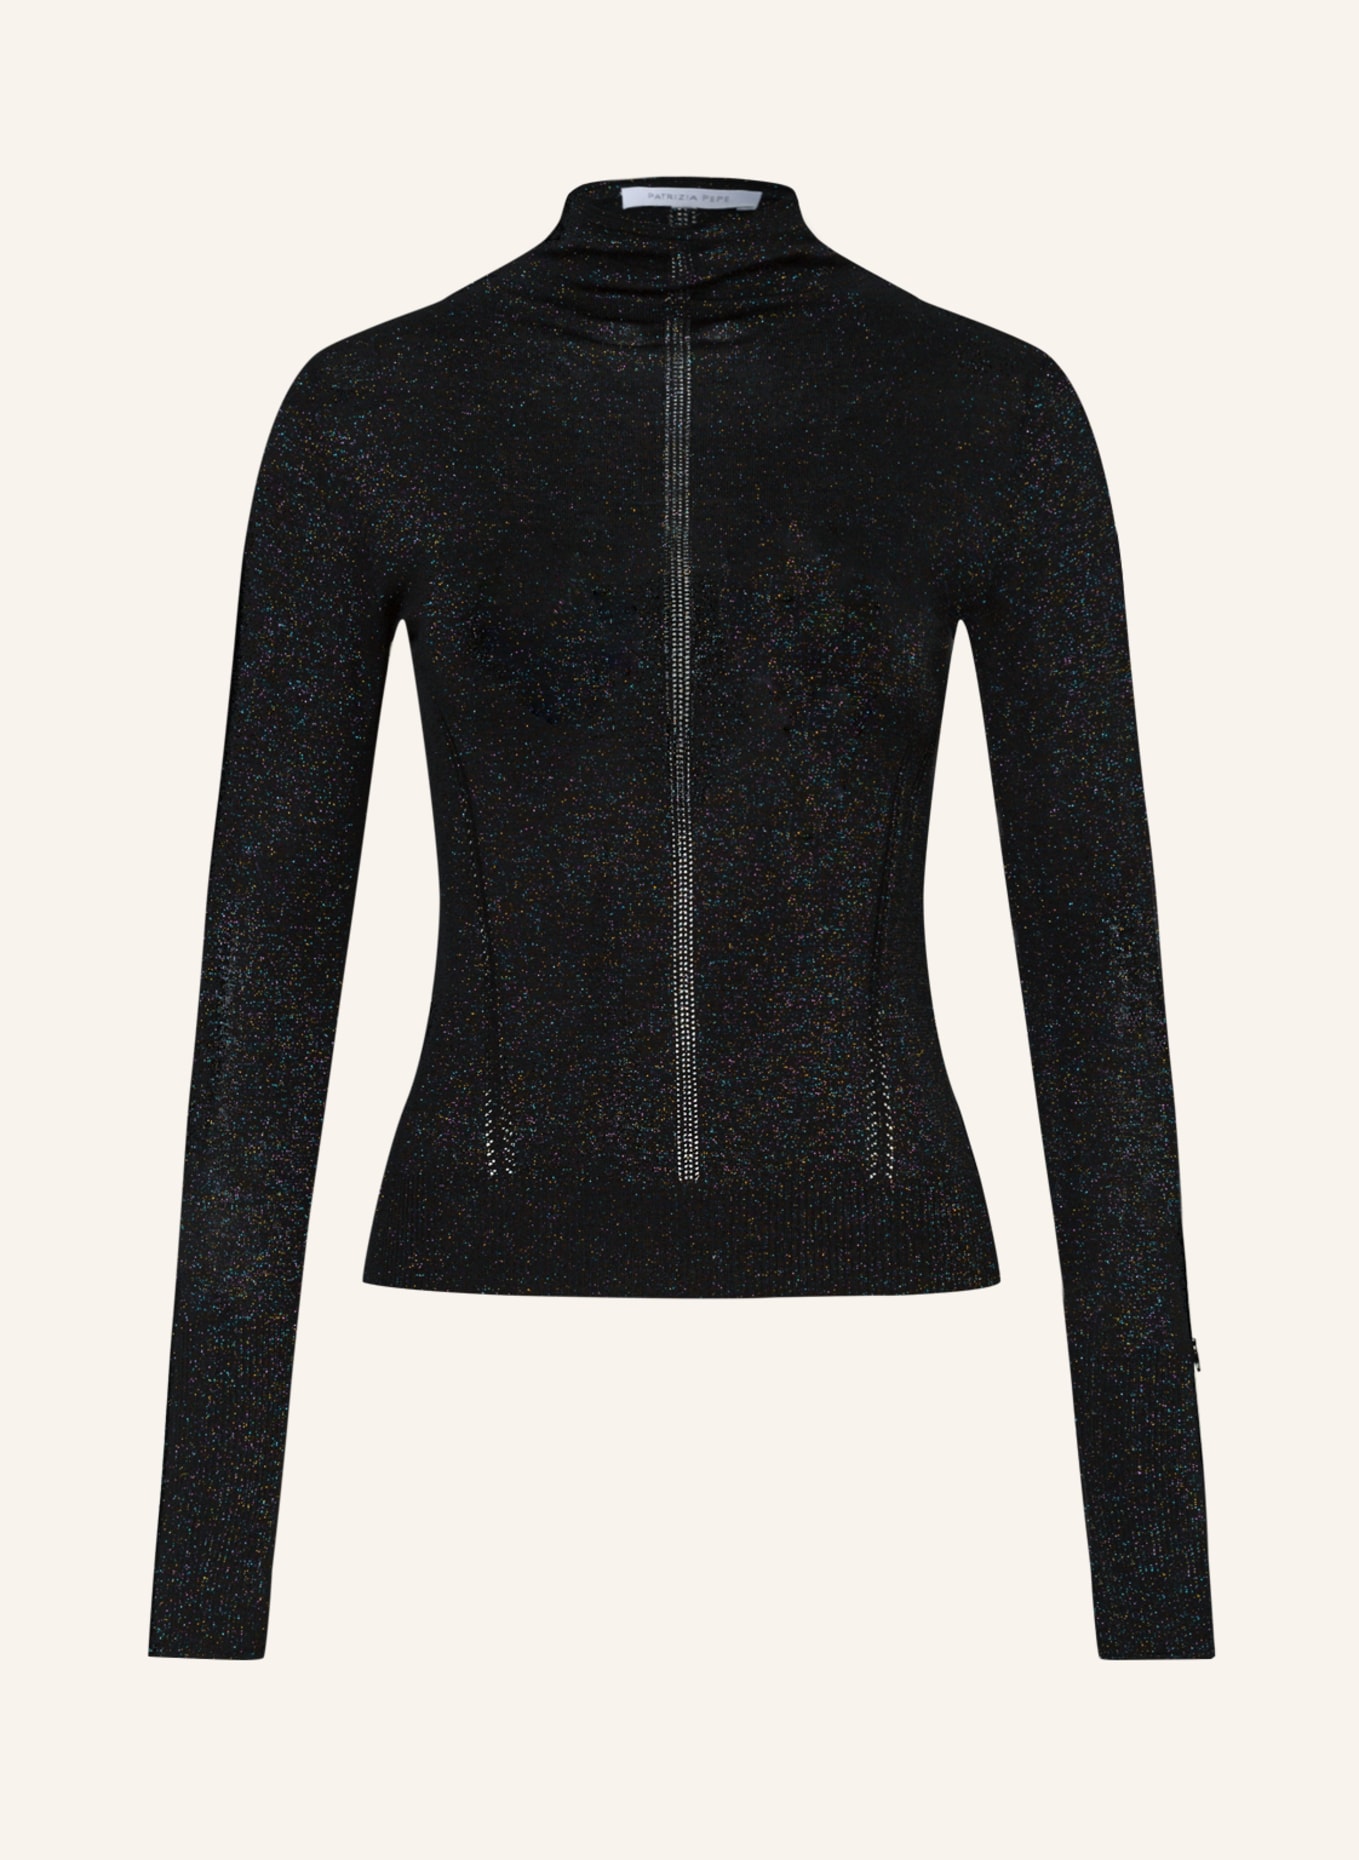 PATRIZIA PEPE Pullover mit Glitzergarn, Farbe: F1YR Black lurex (Bild 1)